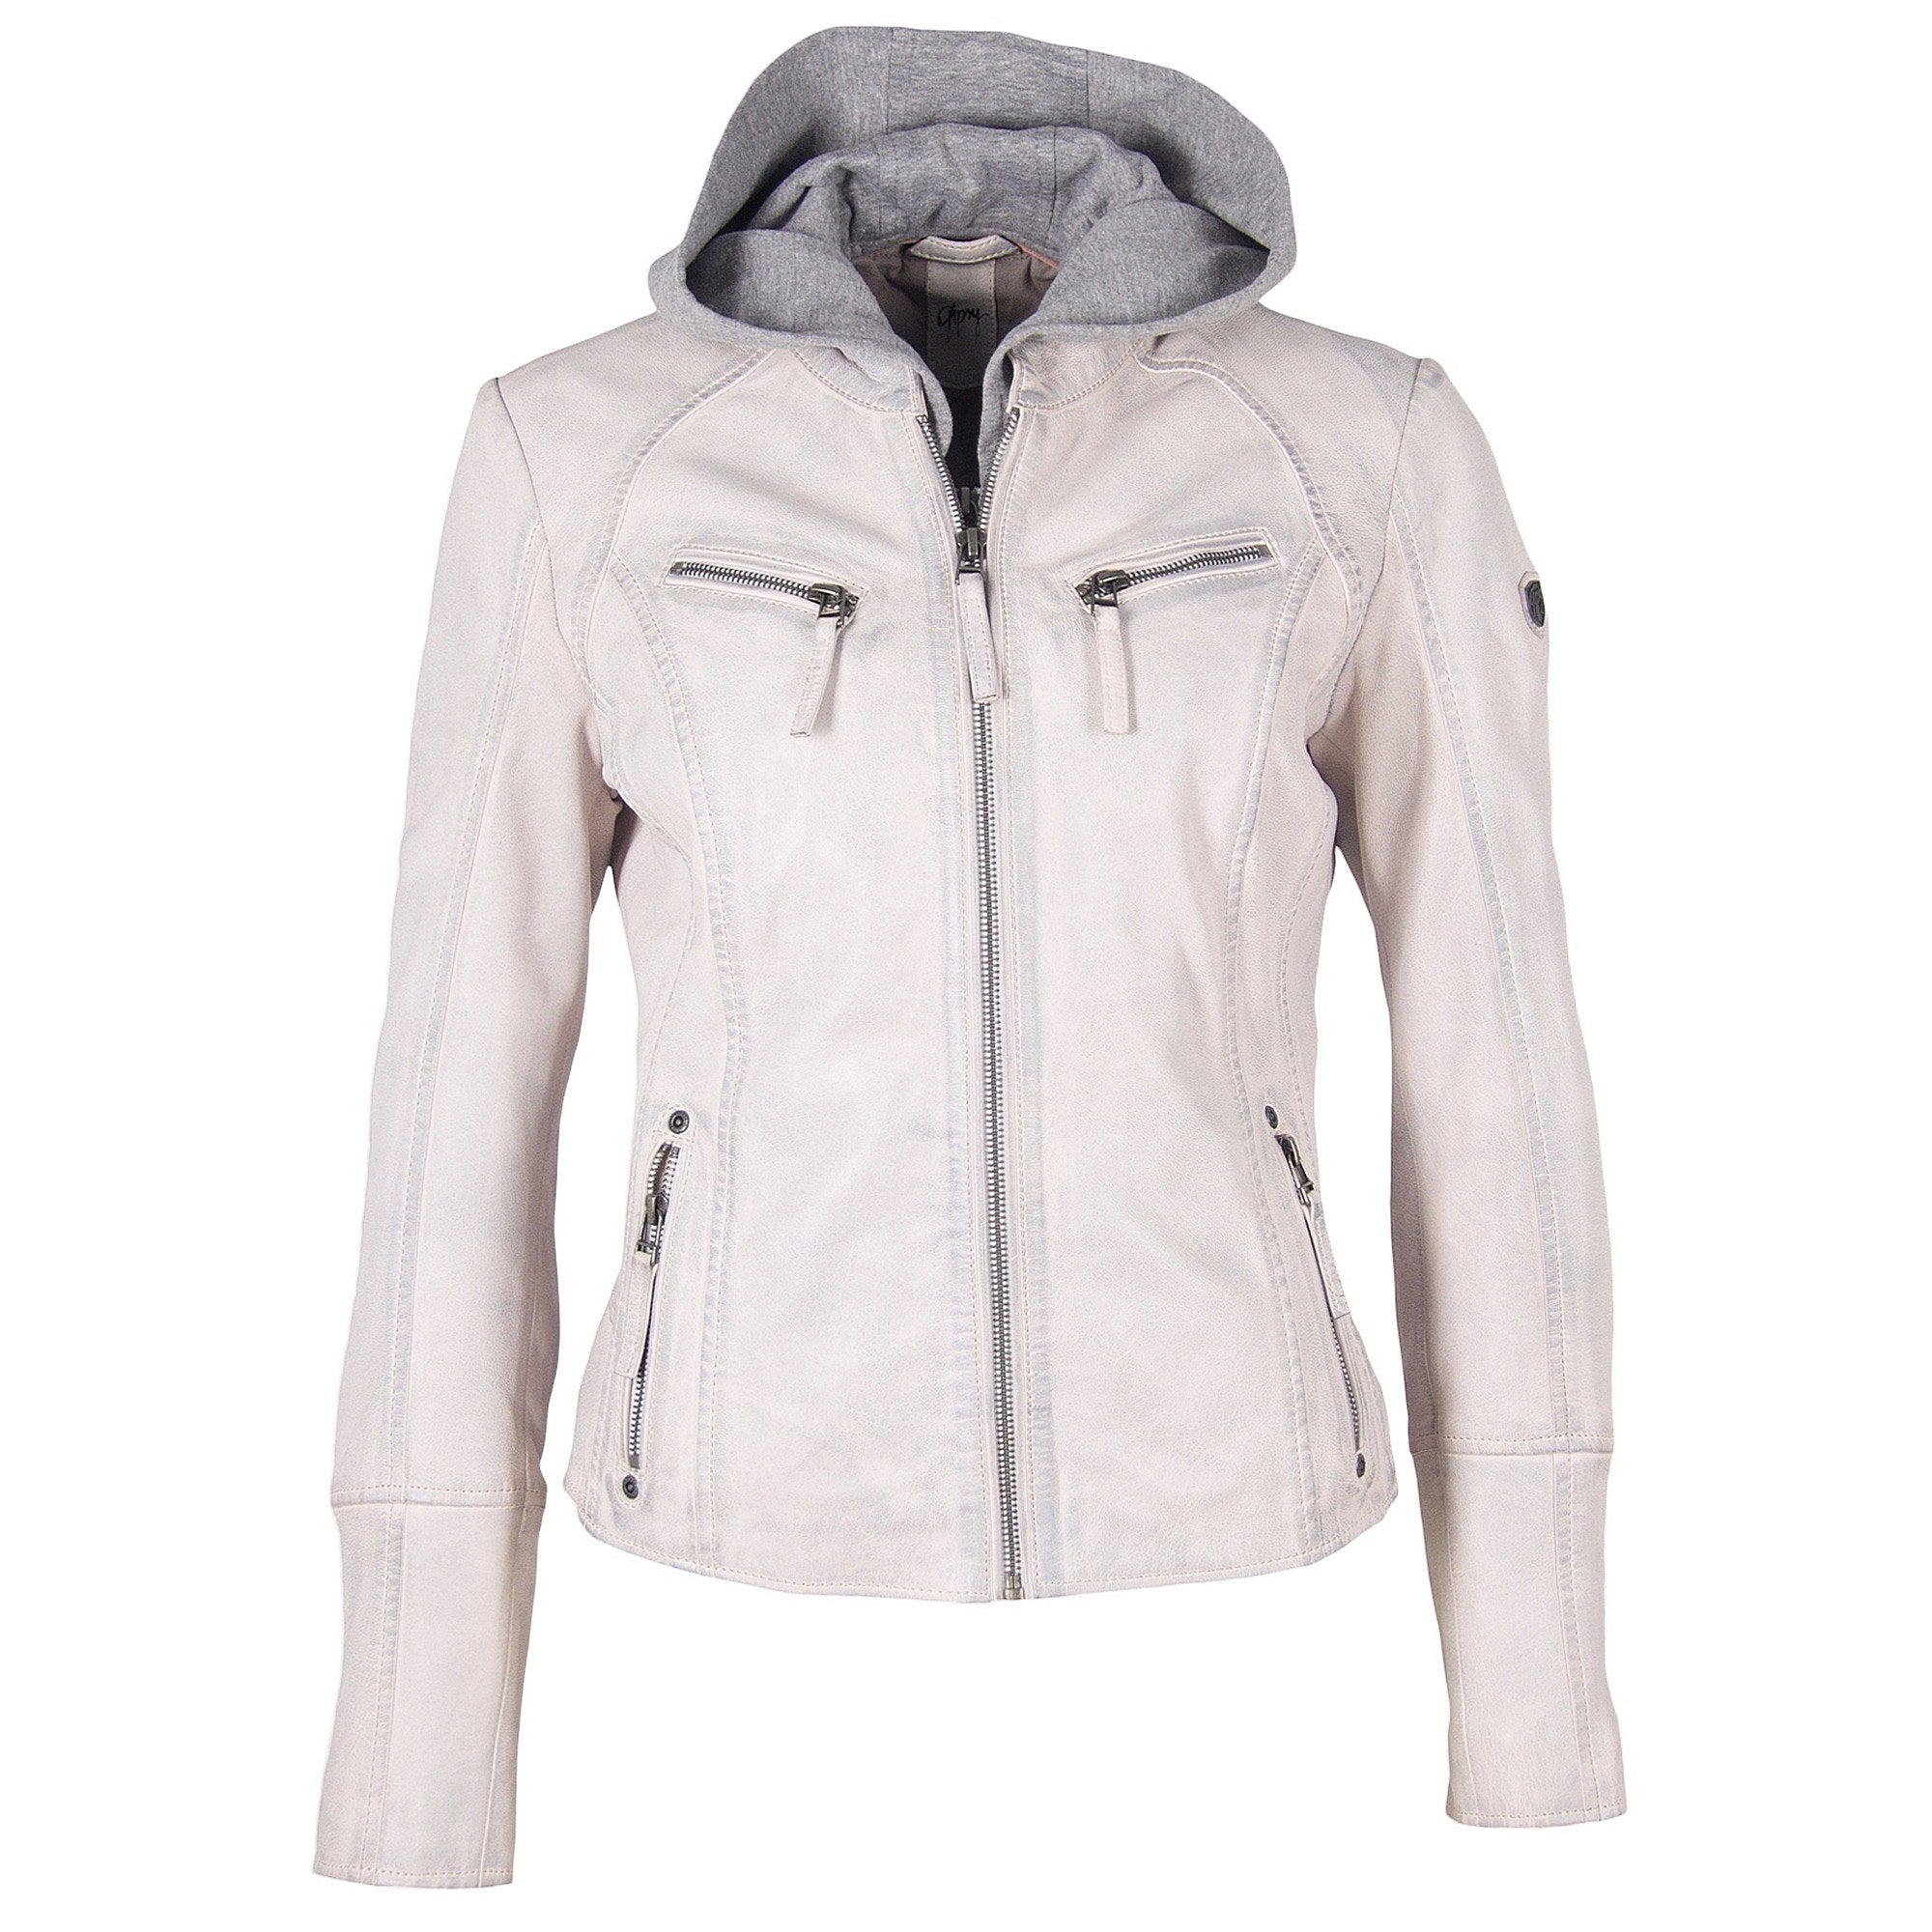 Leather RF Jacket, White mauritiusleather Nola –